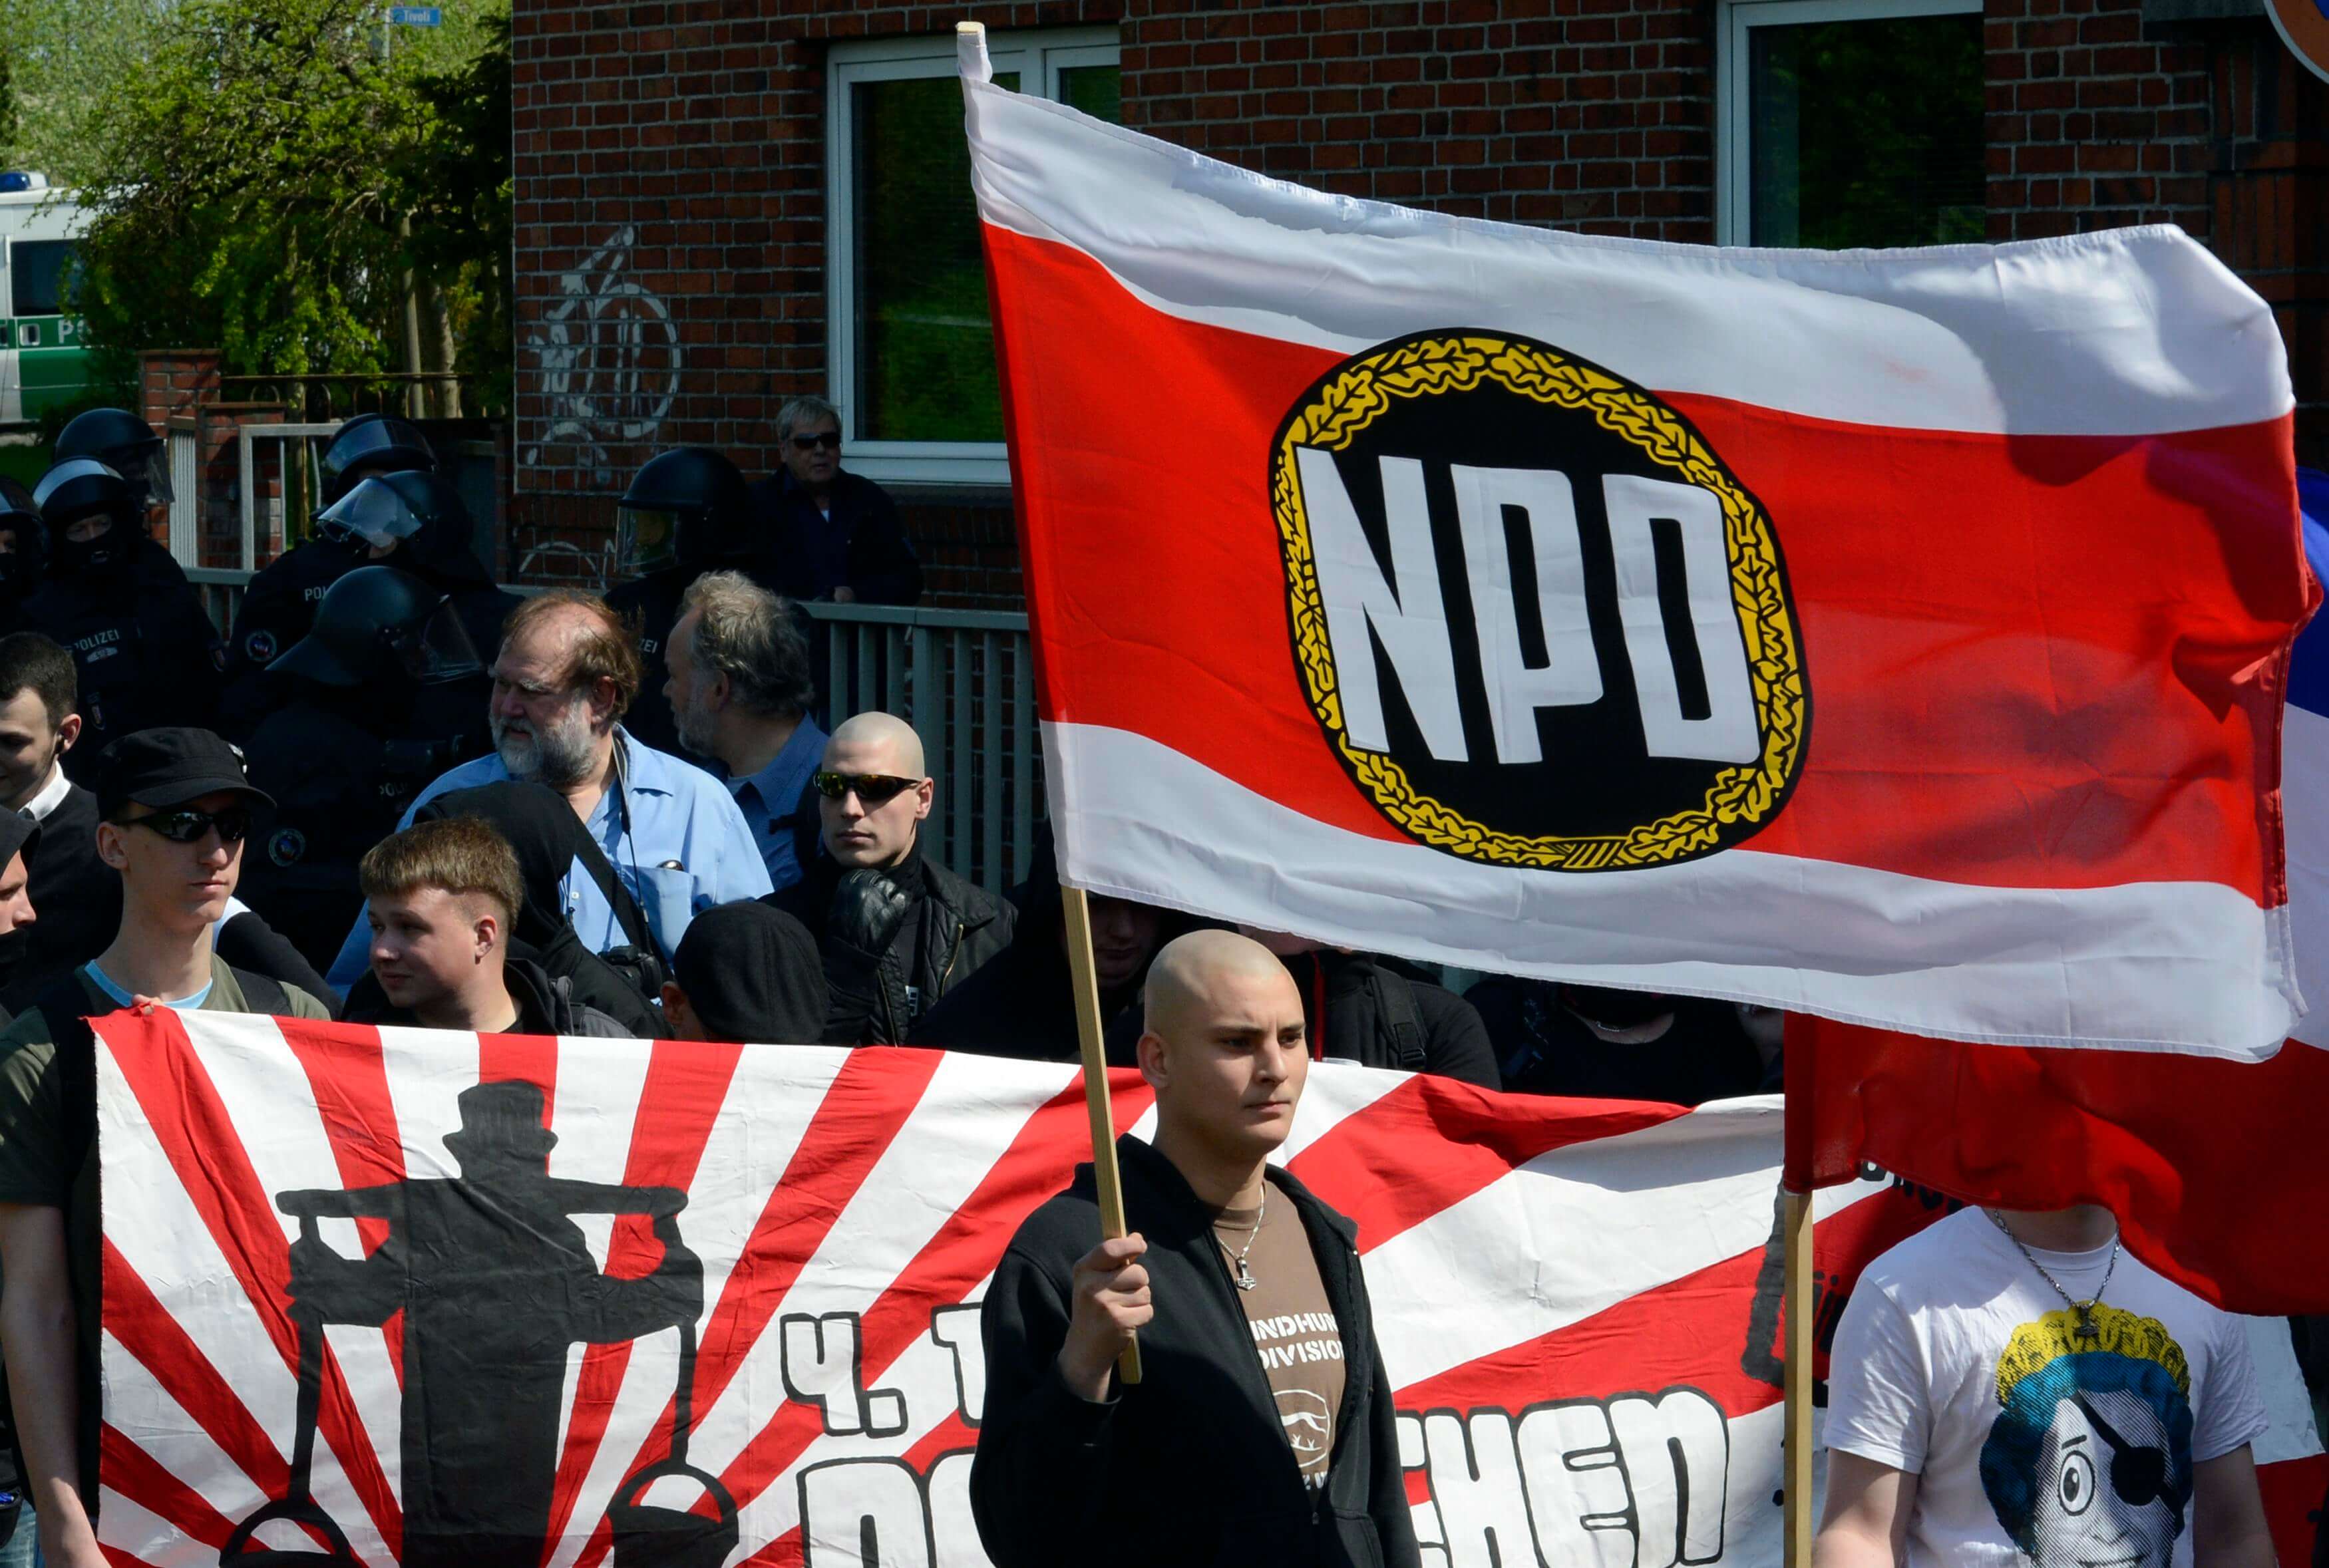 Γερμανία: Προεκλογικό σποτ του νεοναζιστικού κόμματος NPD μεταδίδεται με δικαστική απόφαση